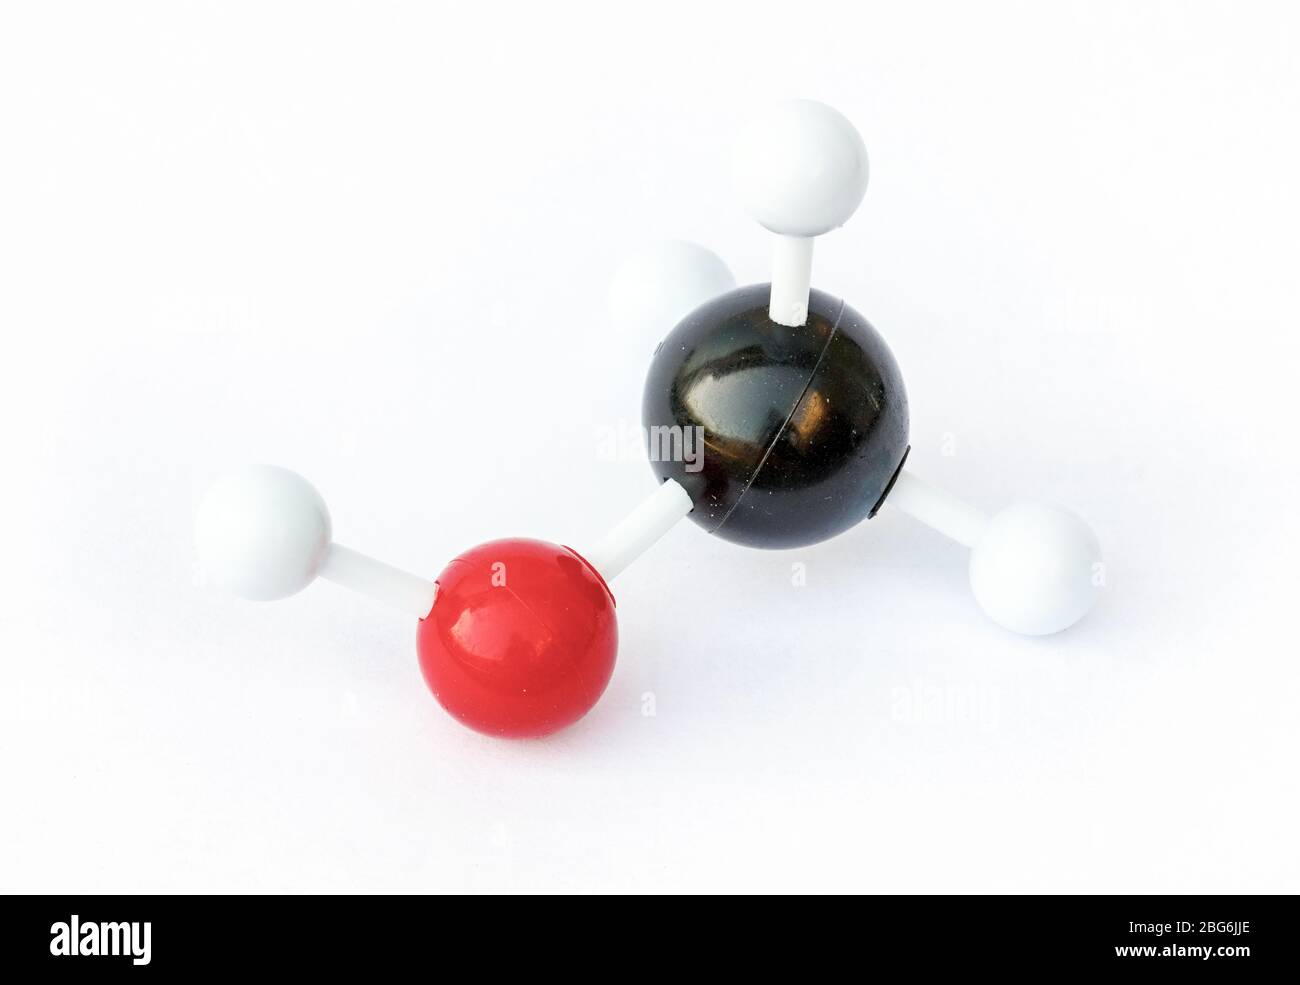 Plastikkugel-und-Stab-Modell eines Methanol-Moleküls (chemische Formel CH3OH) auf einem weißen Hintergrund. Methanol ist hochgiftig und dient häufig als ein Stockfoto